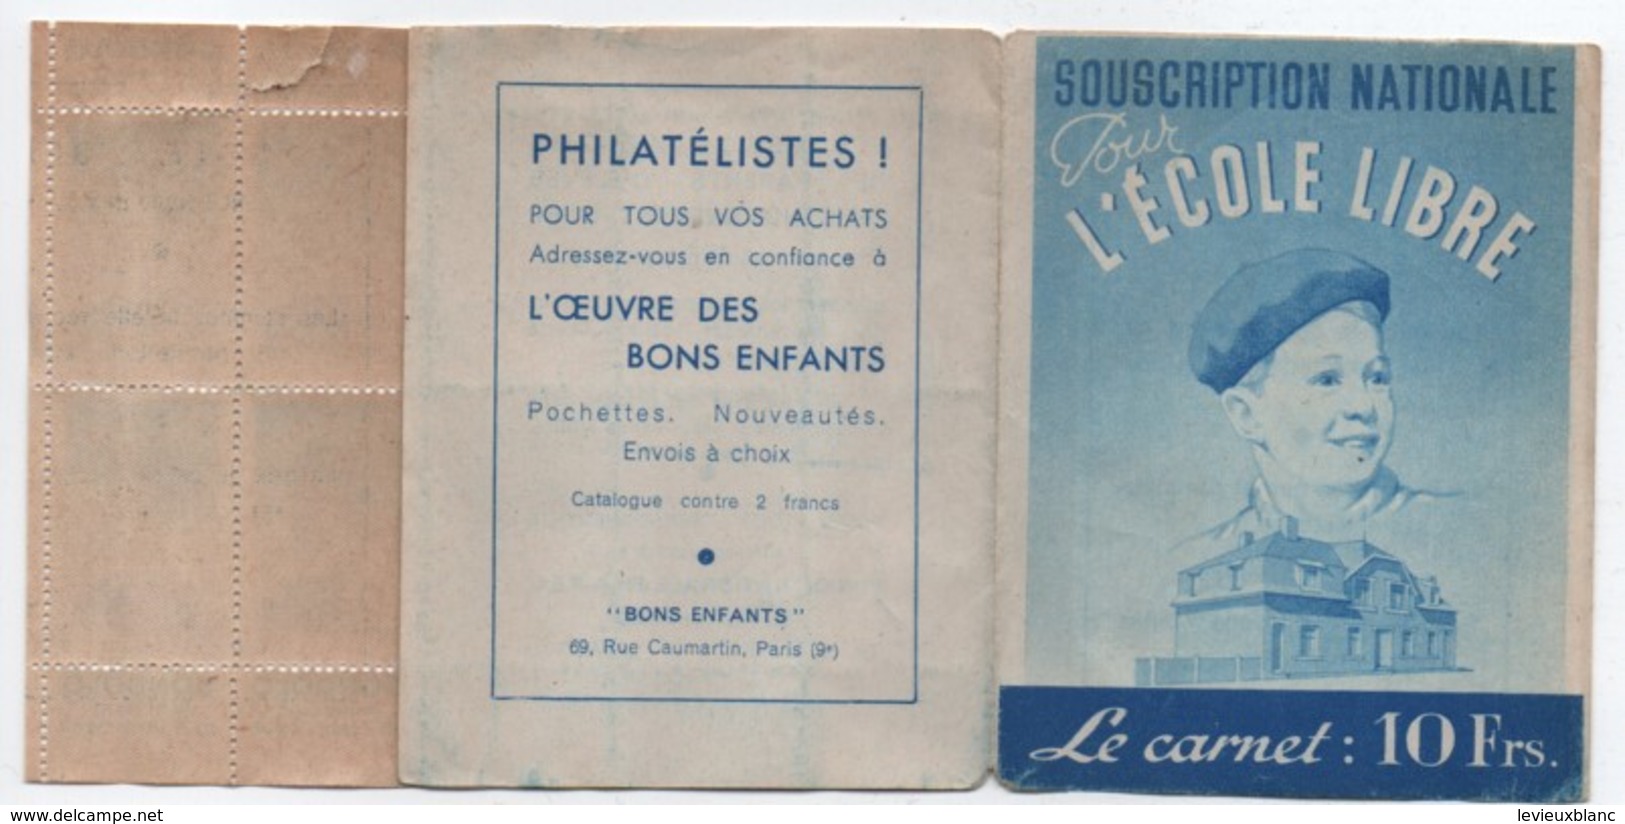 Ecole/Souscription Nationale Pour L'Ecole Libre/Le Carnet De Timbres 10 Frs/APEL/ Vers 1940 - 1950    CAH185 - Diplome Und Schulzeugnisse